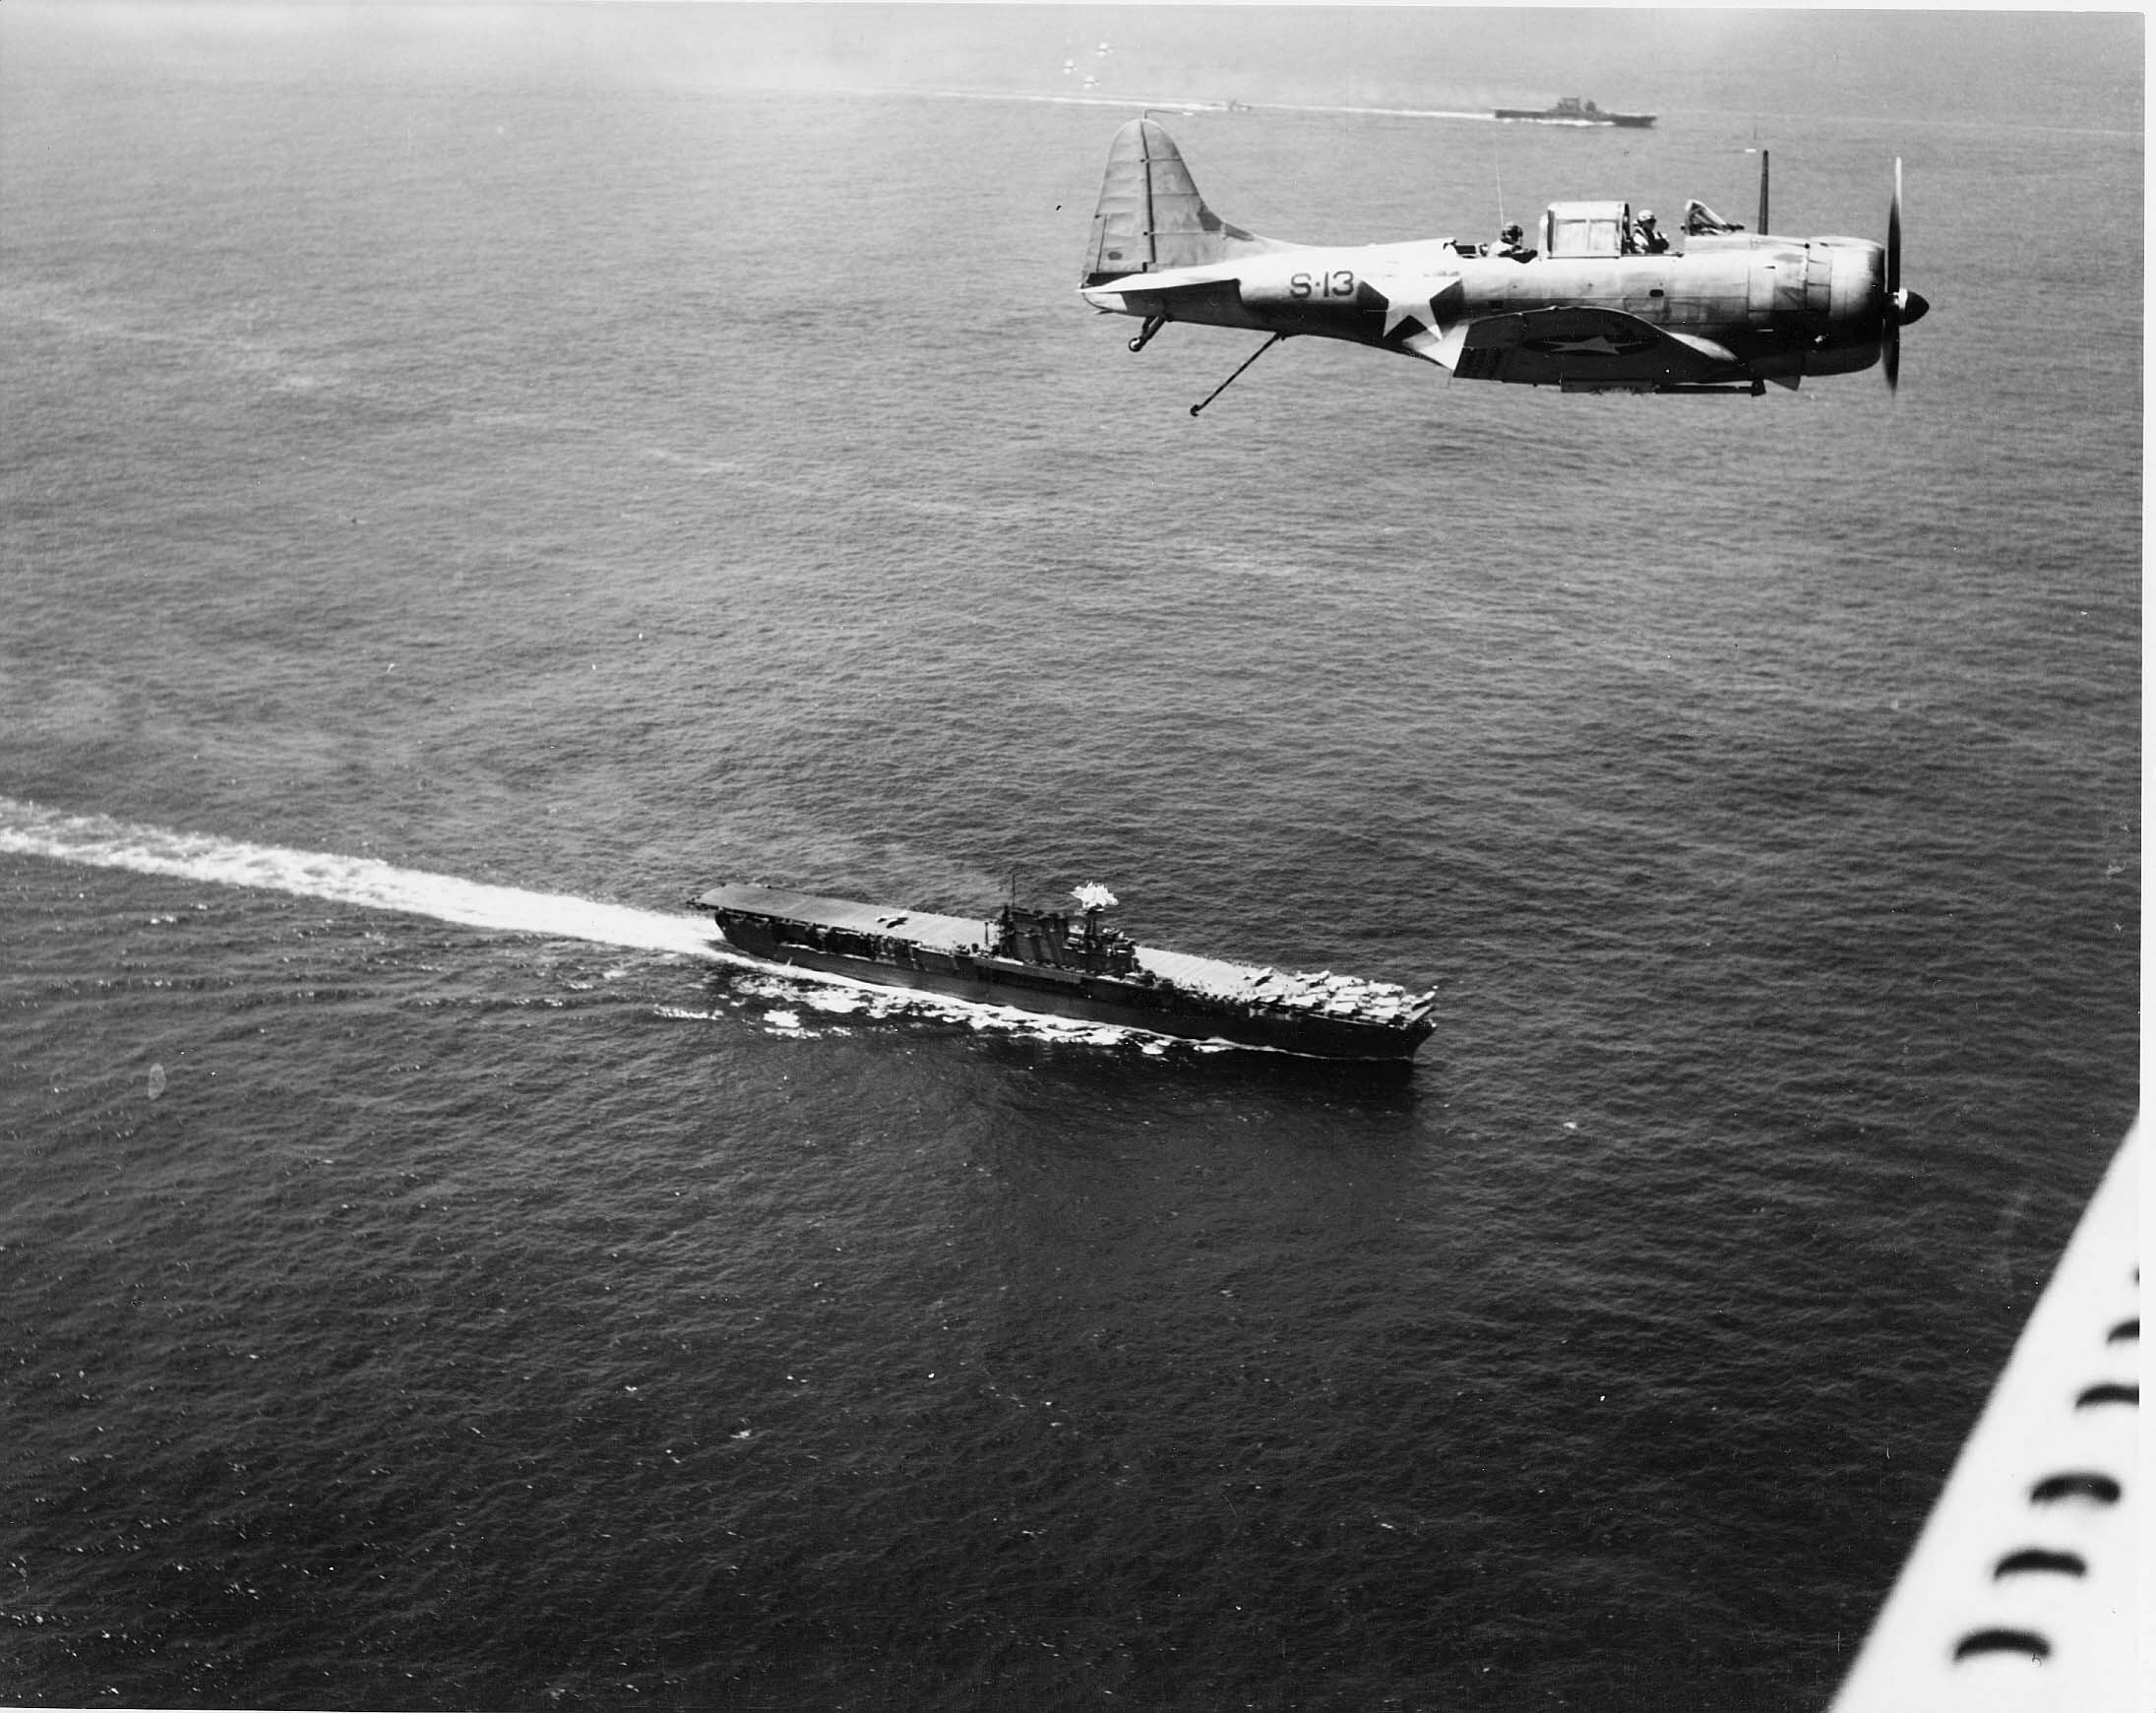 ファイル Douglas Sbd Flies Over Uss Enterprise Cv 6 And Uss Saratoga Cv 3 On 19 December 1942 Jpg Wikipedia